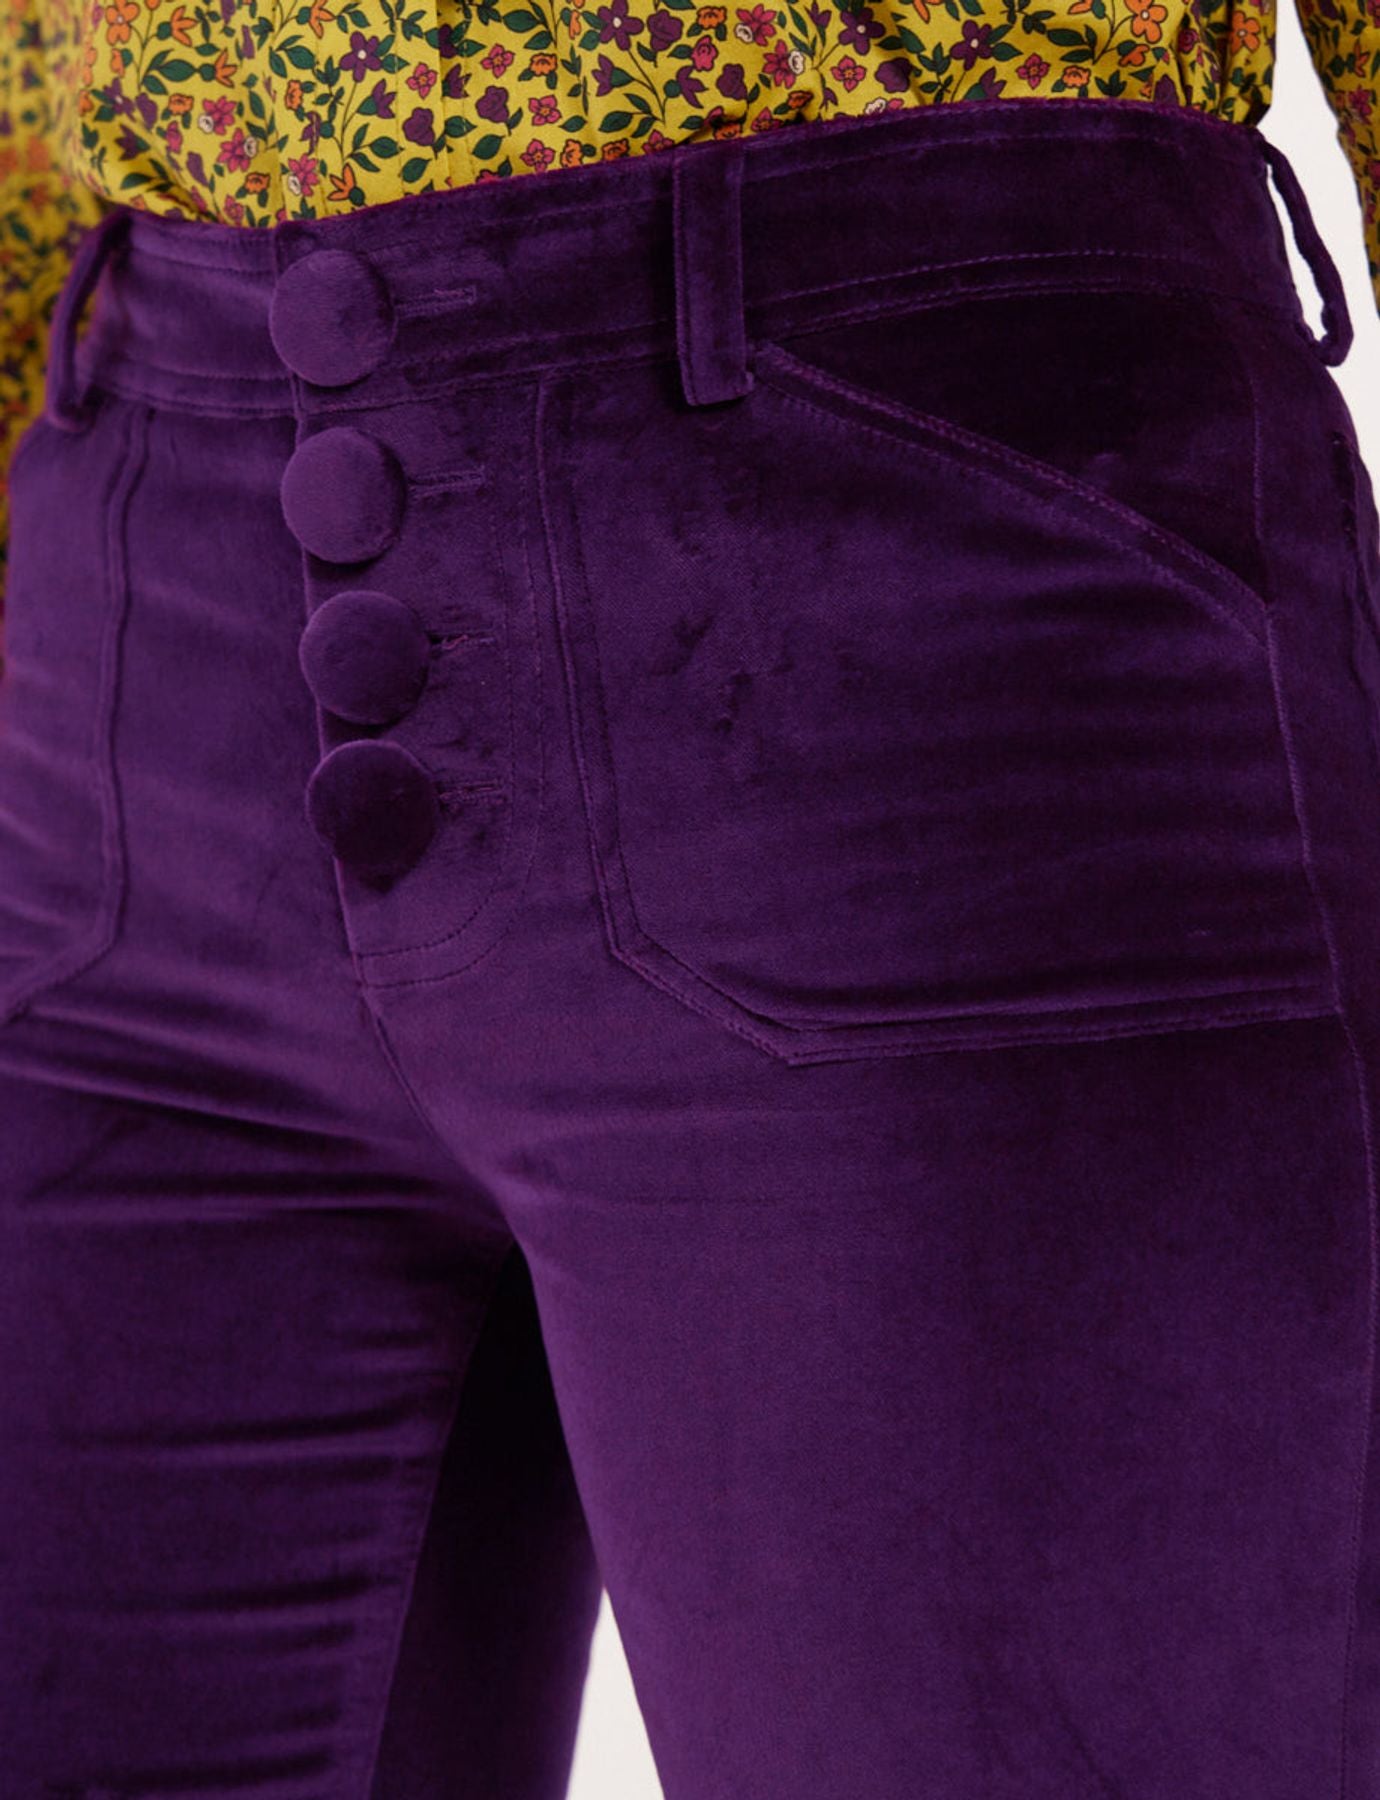 purple-pants-in-sheer